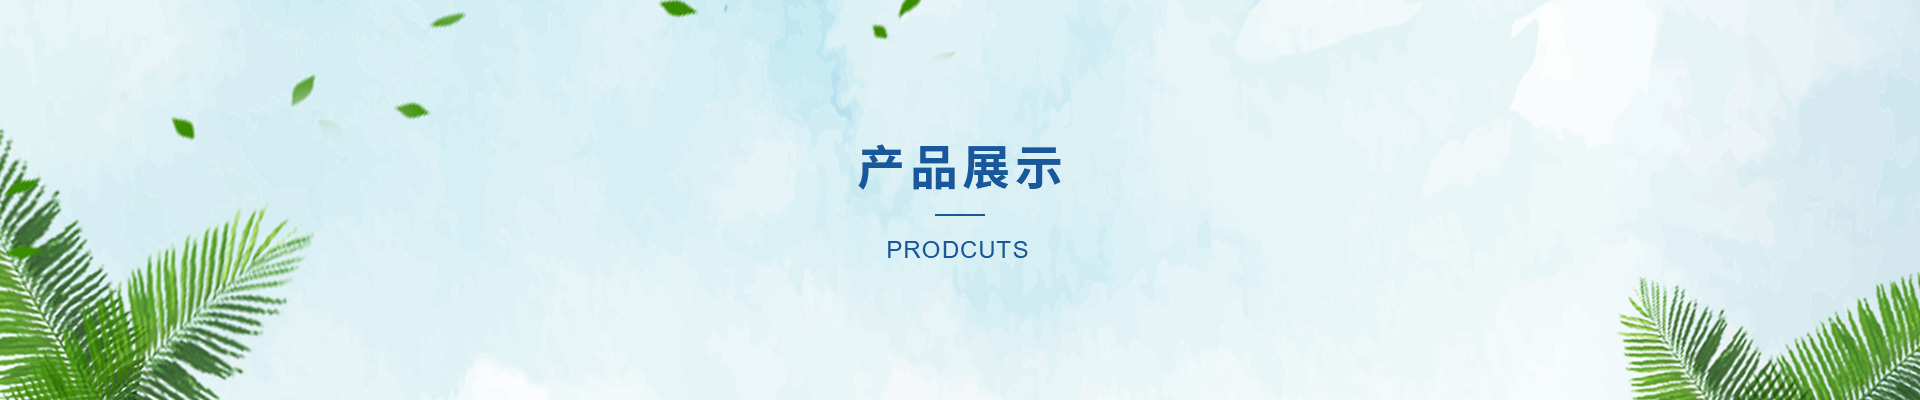 【48812】湖南嘉品彩印包装有限公司2000ta塑料膜印刷项目受理公示